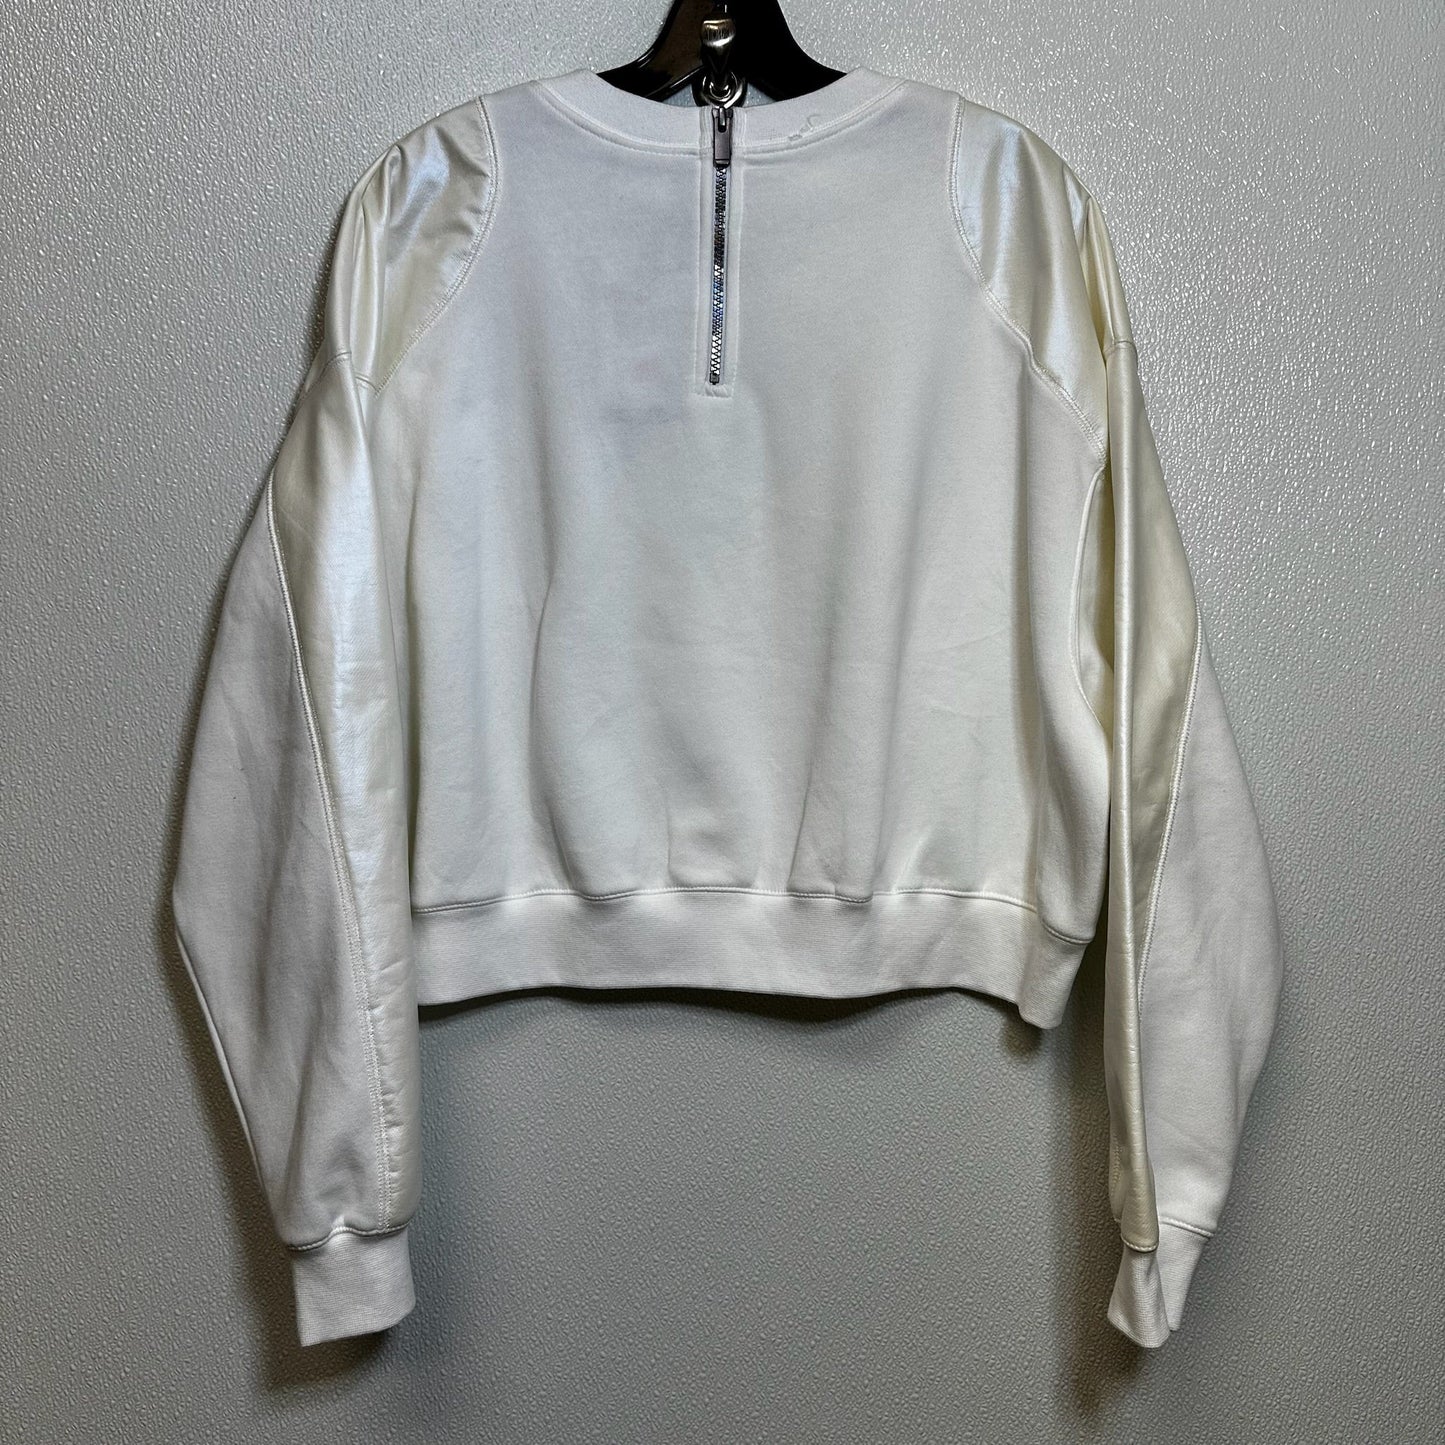 White Sweatshirt Crewneck Nike Apparel, Size L